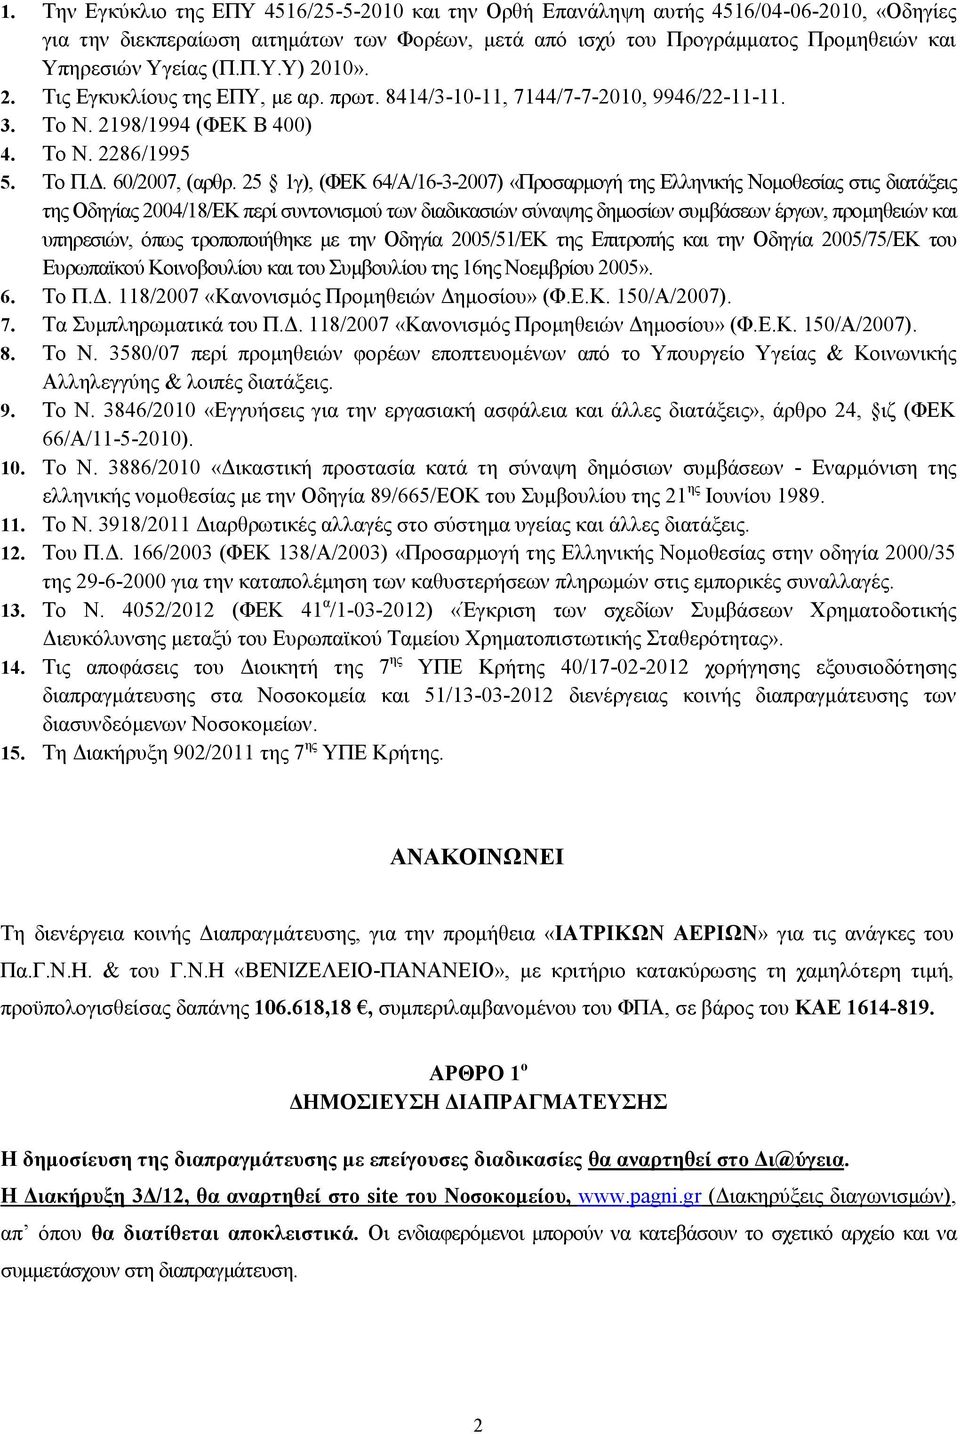 25 1γ), (ΦΕΚ 64/Α/16-3-2007) «Προσαρμογή της Ελληνικής Νομοθεσίας στις διατάξεις της Οδηγίας 2004/18/ΕΚ περί συντονισμού των διαδικασιών σύναψης δημοσίων συμβάσεων έργων, προμηθειών και υπηρεσιών,